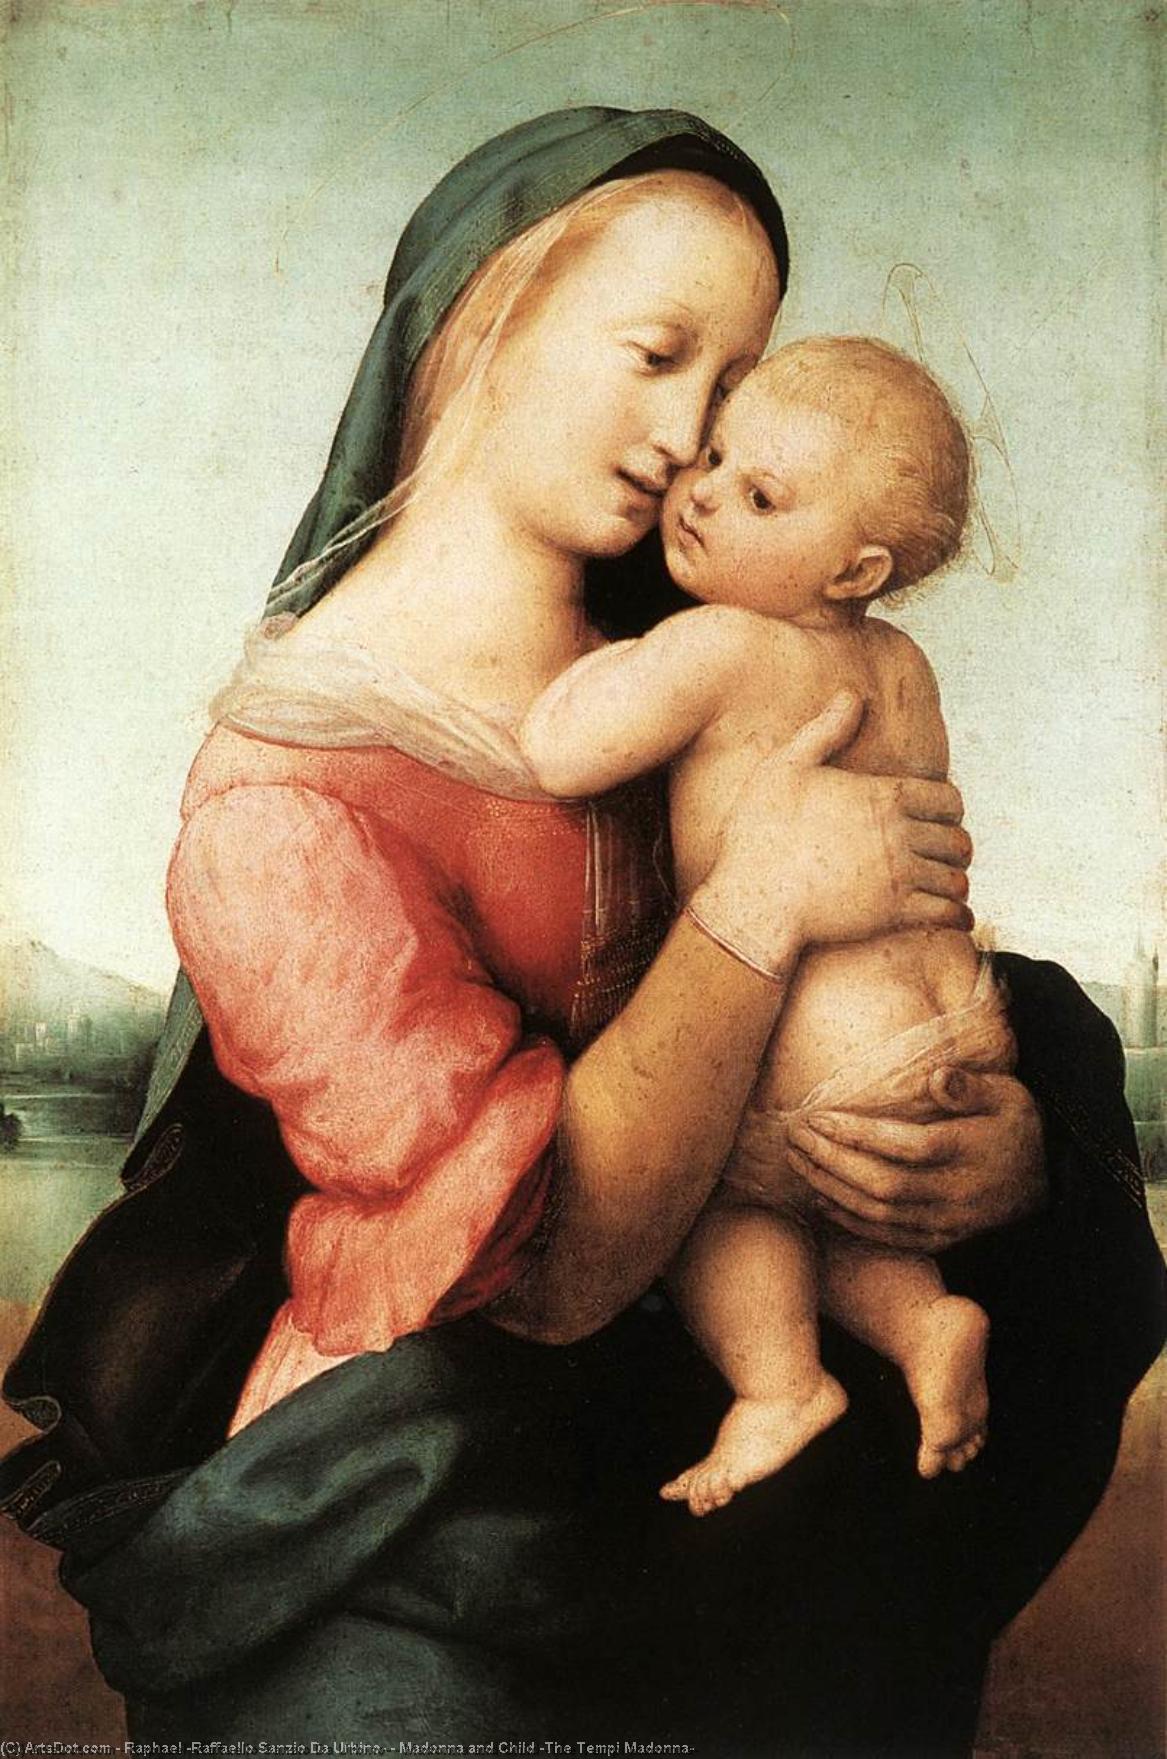 Comprar Reproducciones De Arte Del Museo Madonna y Niño (The Tempi Madonna), 1508 de Raphael (Raffaello Sanzio Da Urbino) (1483-1520, Italy) | ArtsDot.com